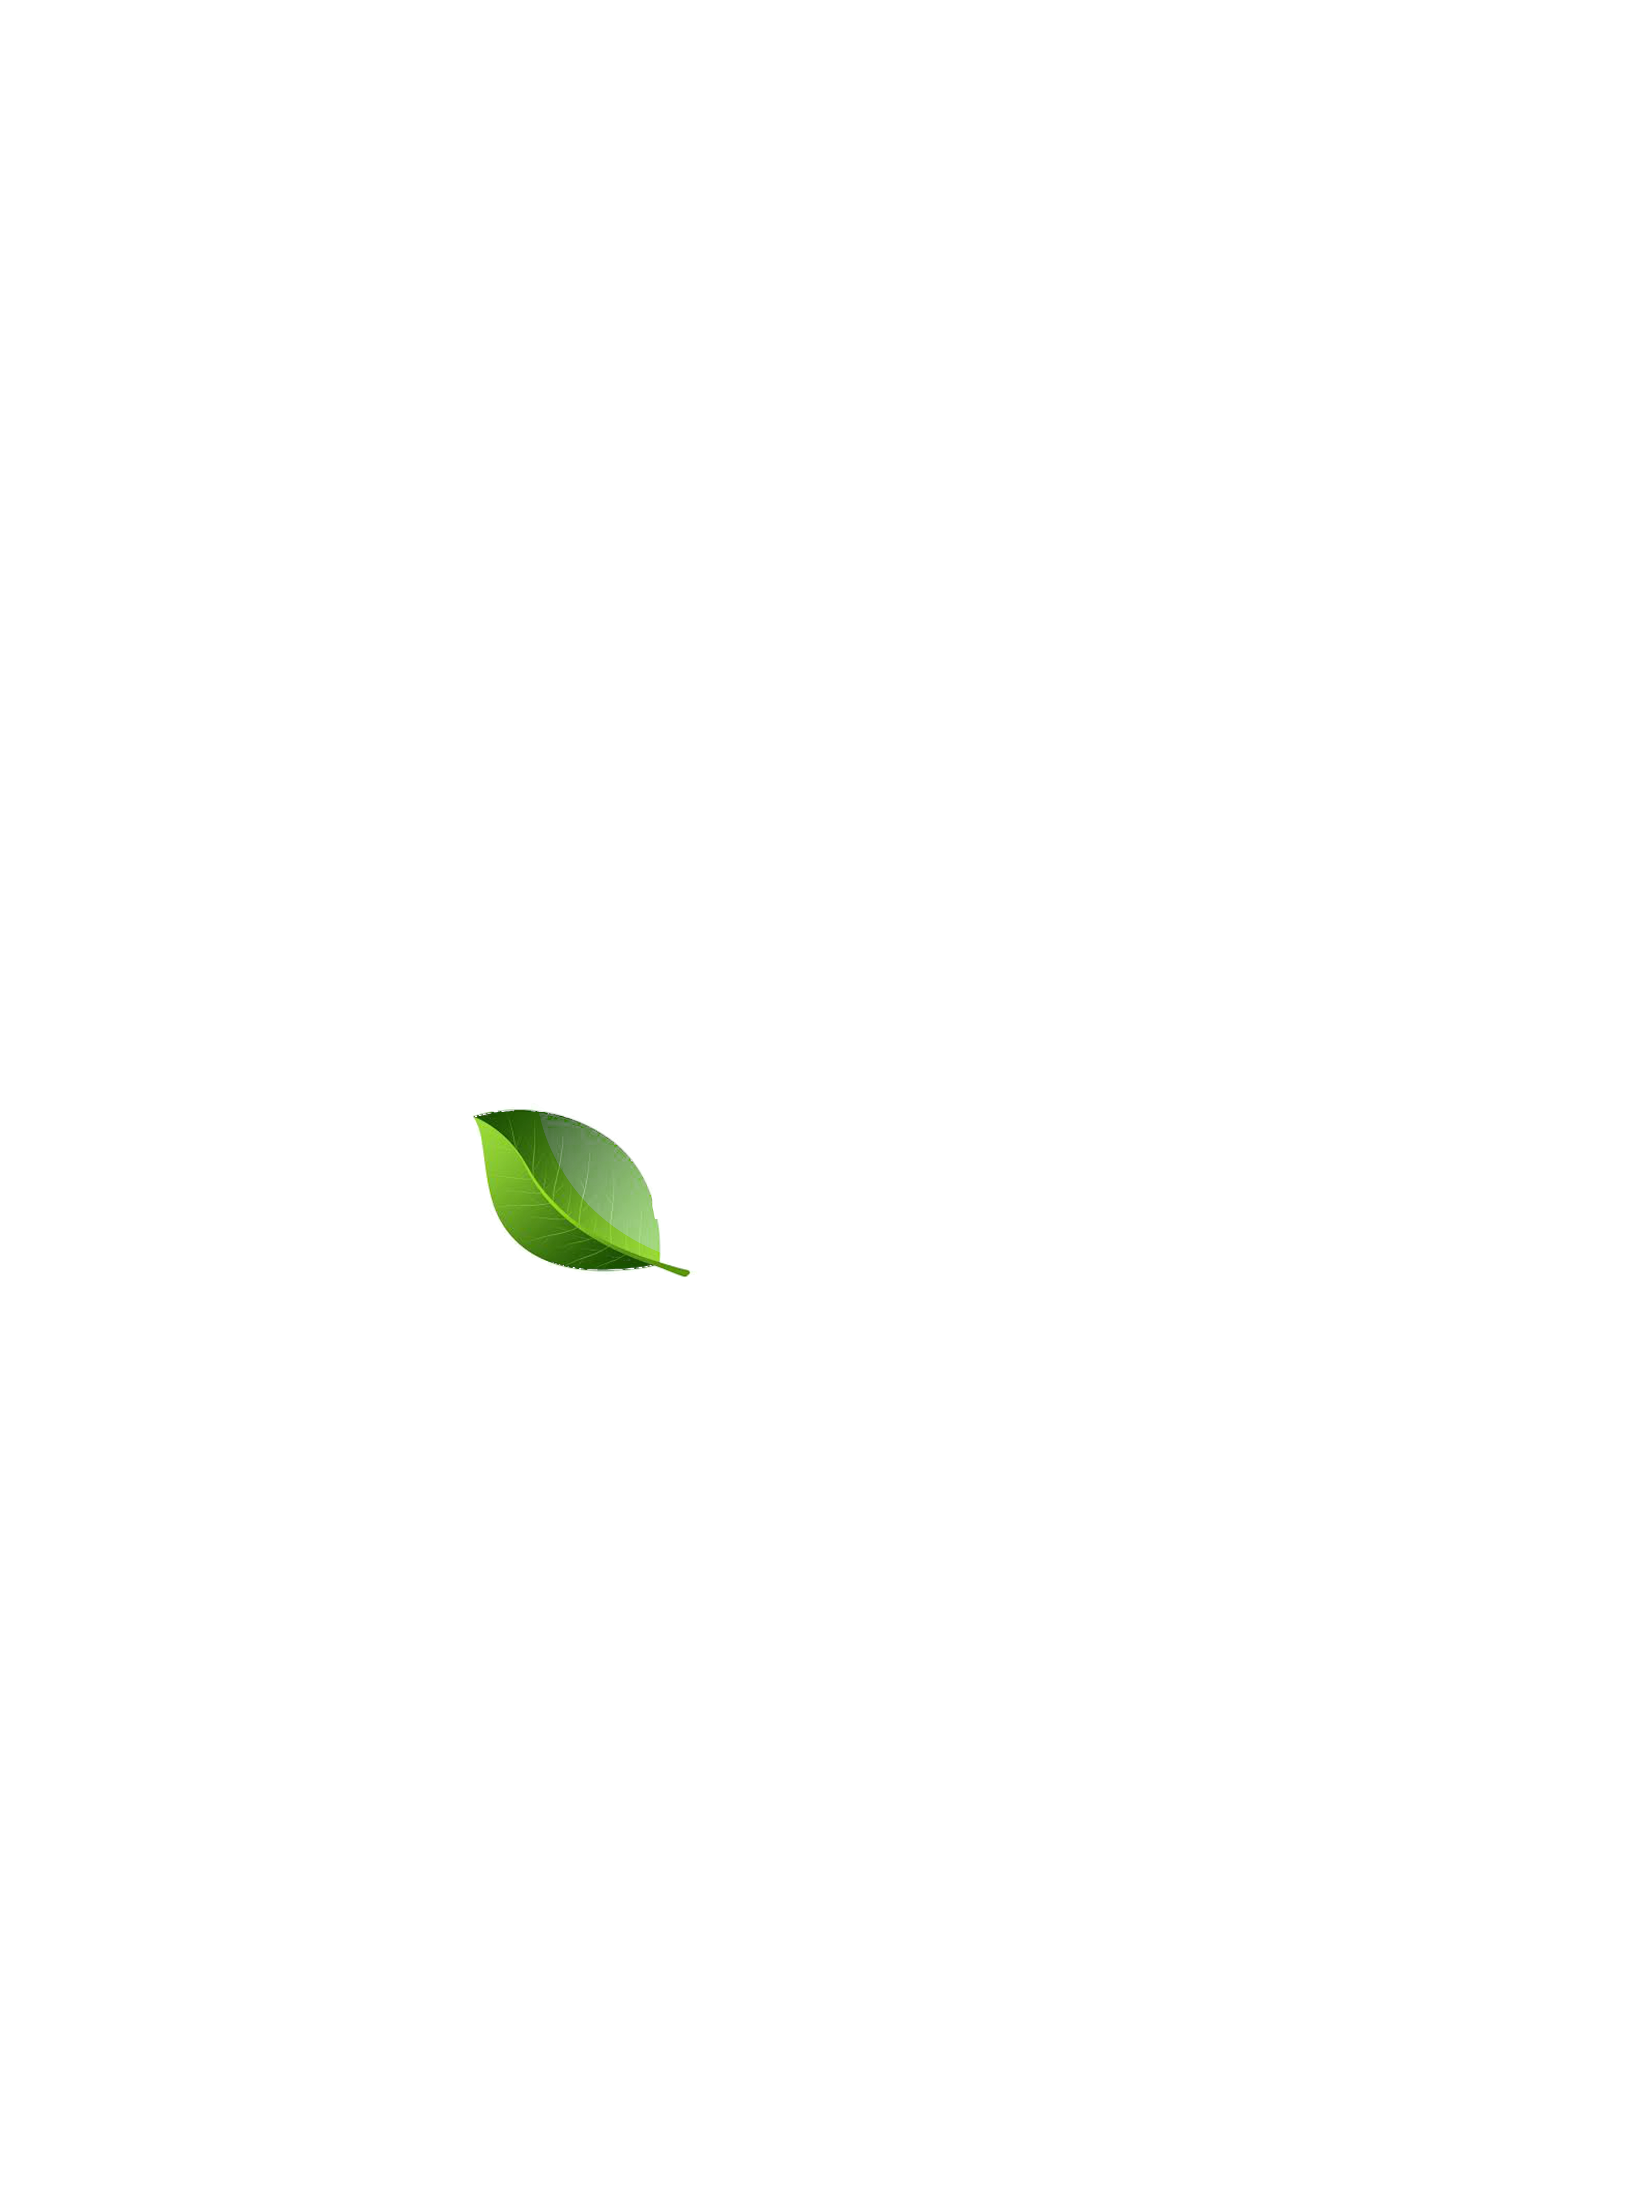 Inner G Complete Logo